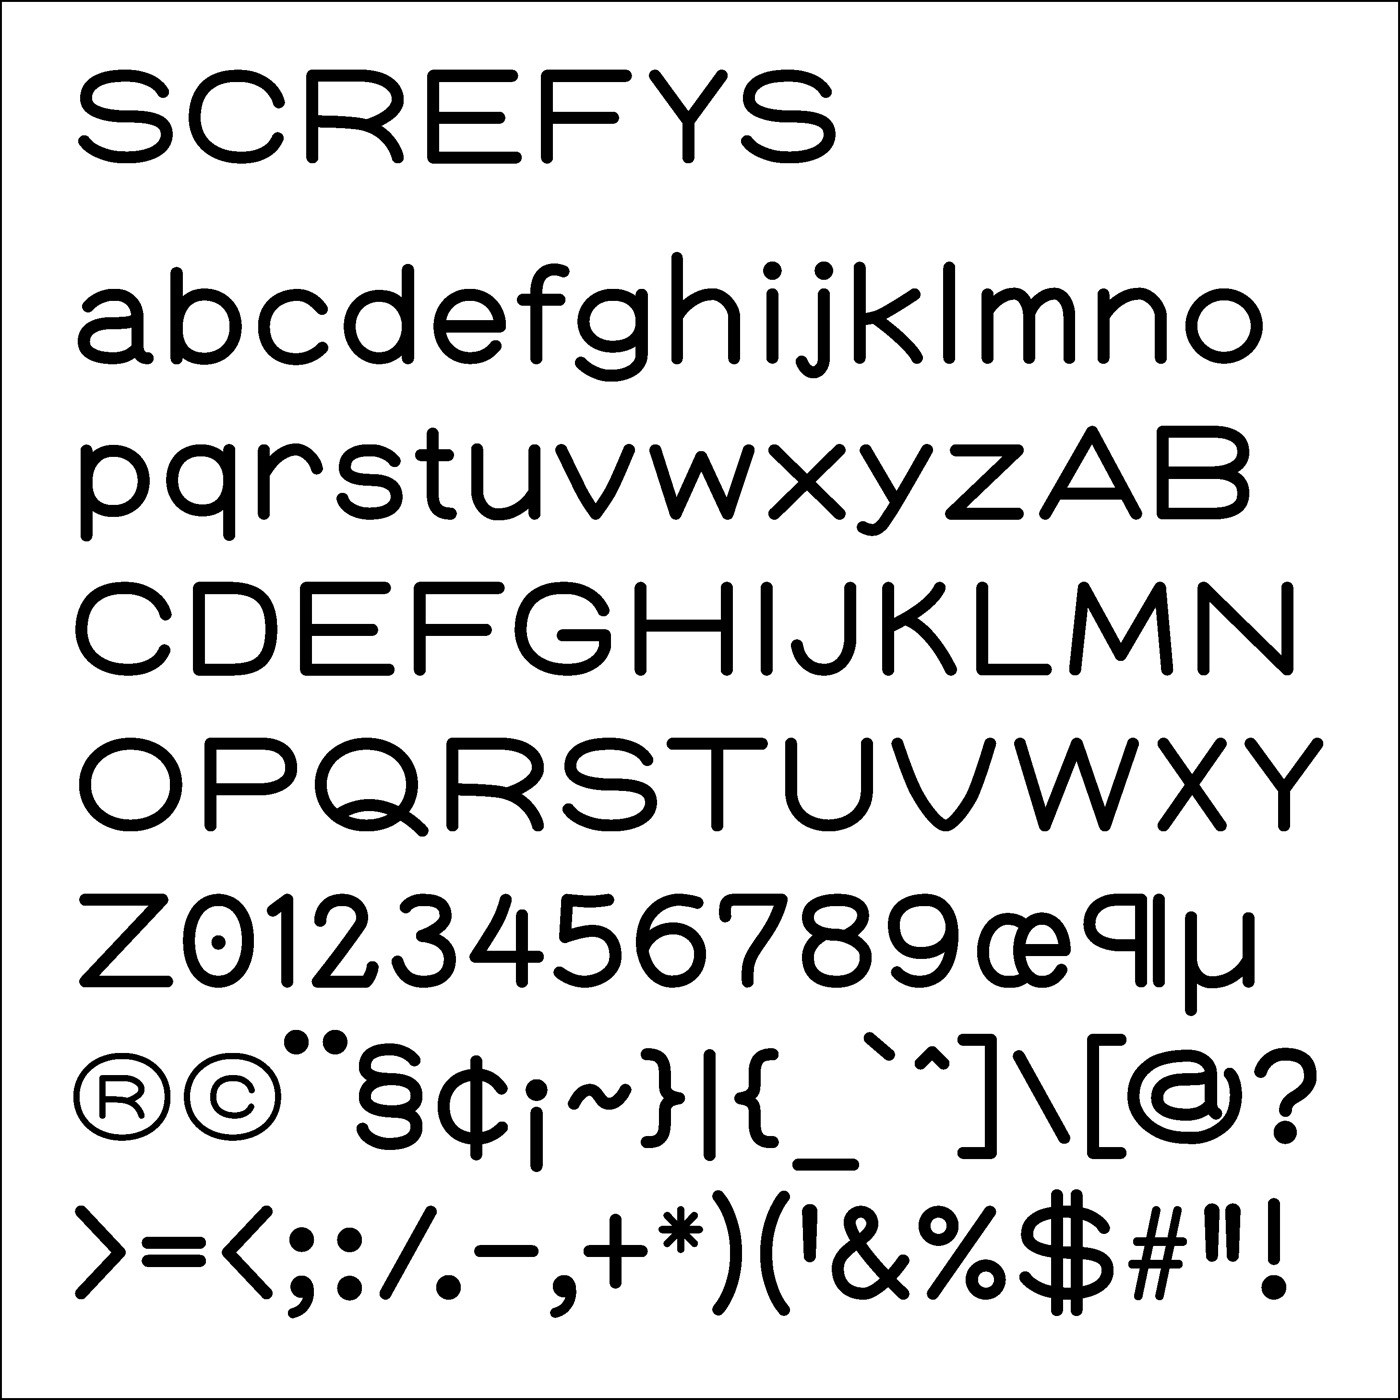 Screfys typeface designed by Thomas Bush